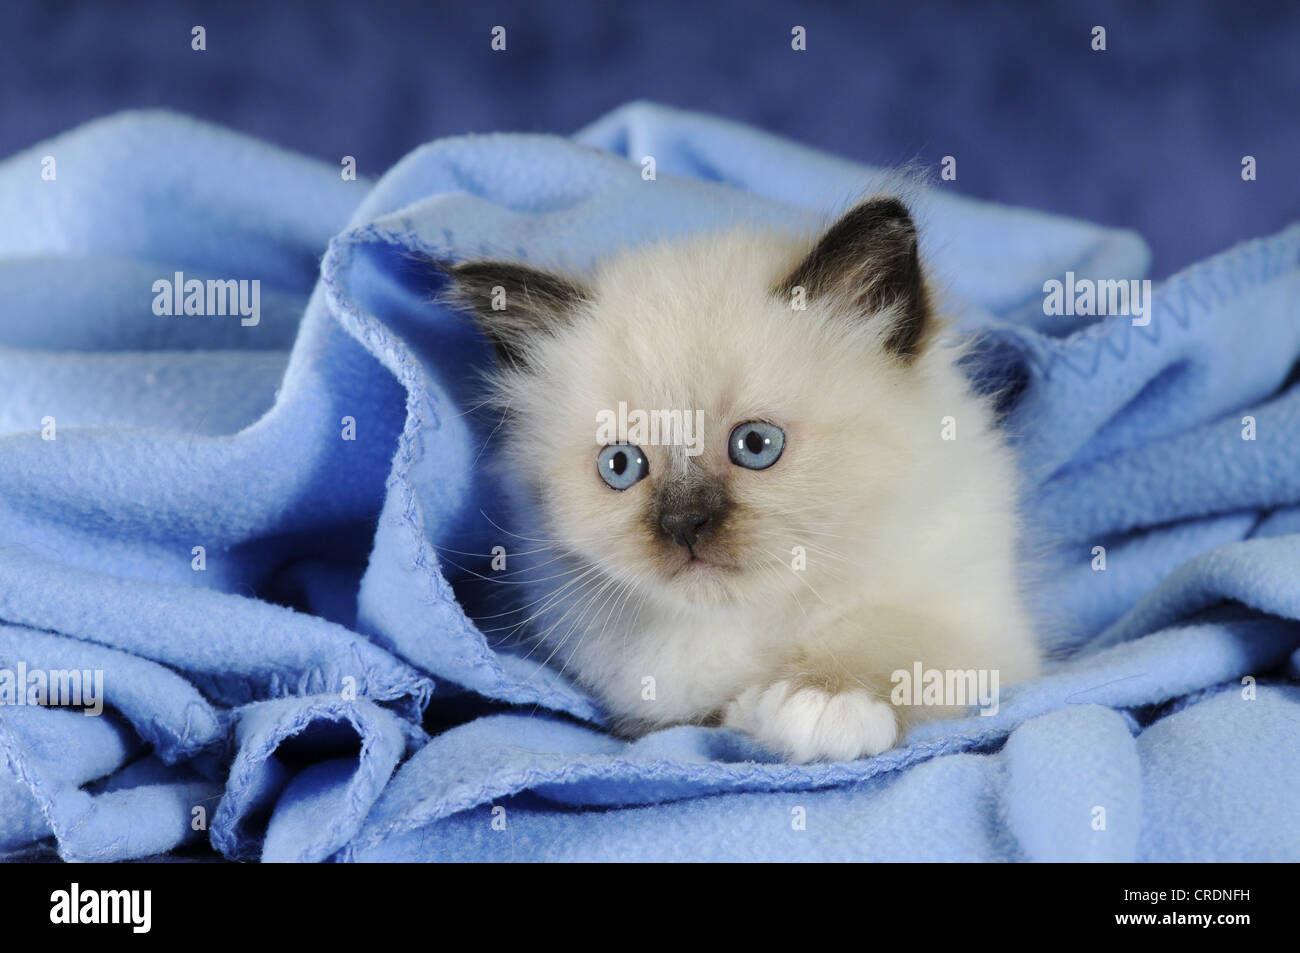 Birman kitten on a blue blanket Stock Photo